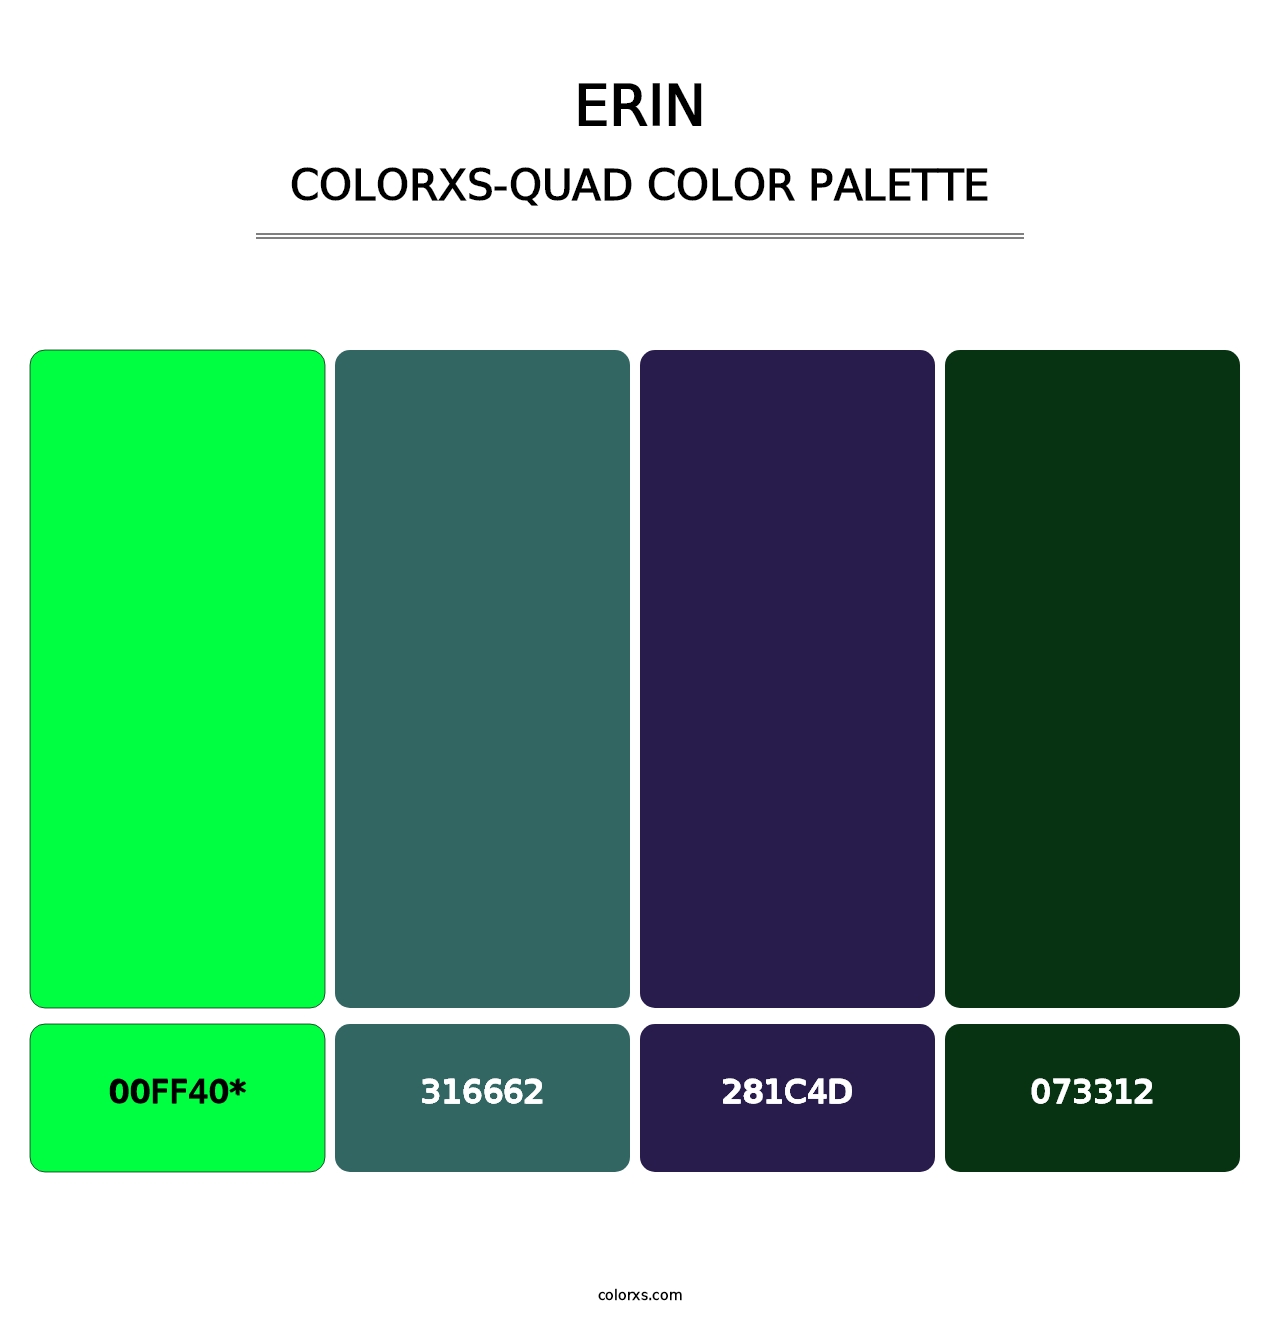 Erin - Colorxs Quad Palette